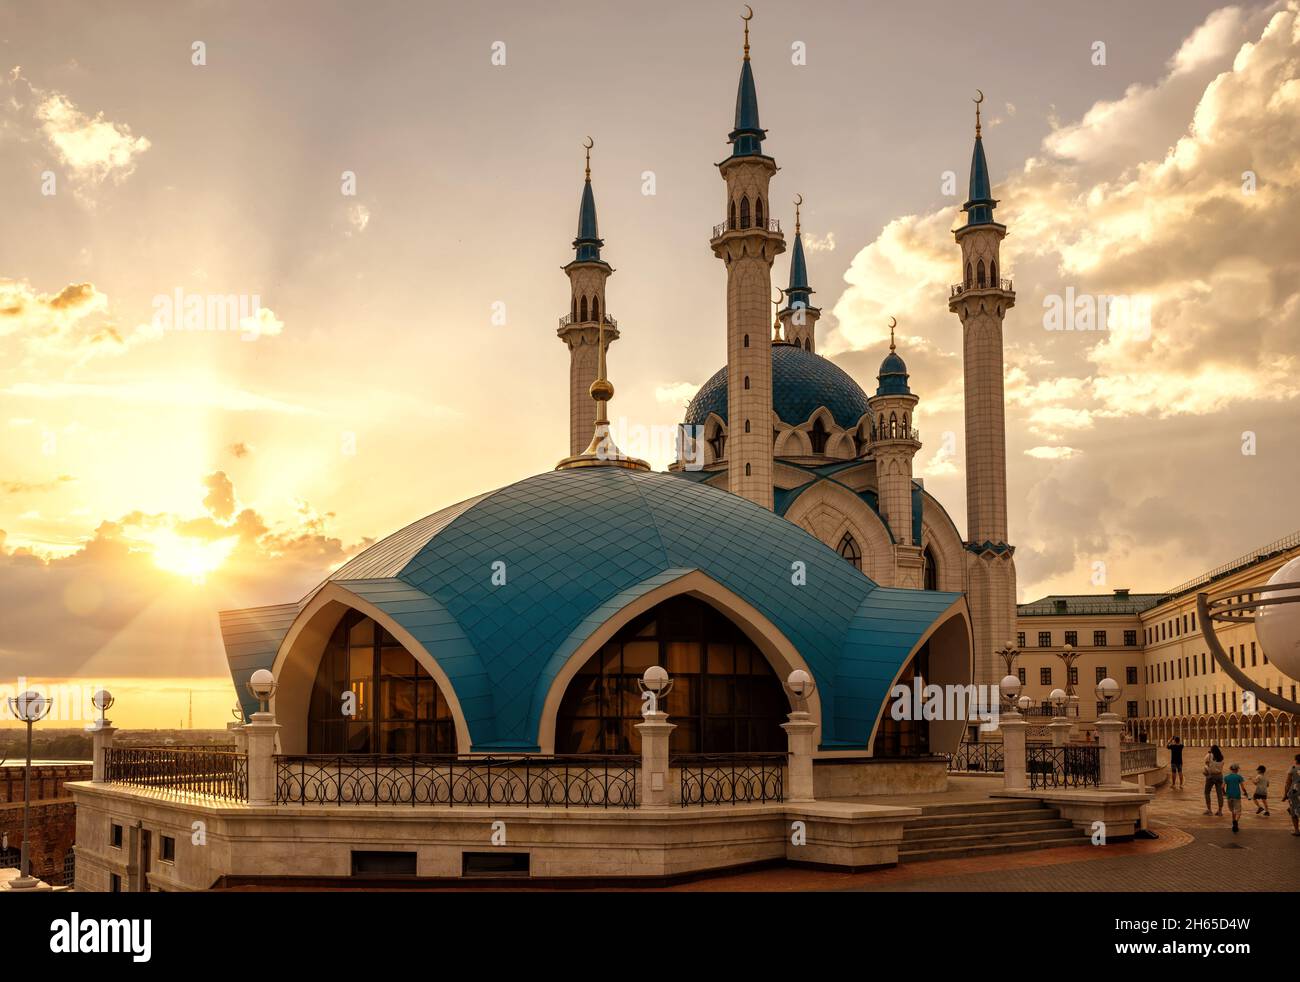 Kul Sharif Moschee im Kasaner Kreml bei Sonnenuntergang, Tatarstan, Russland. Es ist das Wahrzeichen von Kazan. Sonnige Ansicht der islamischen Architektur, Touristenattraktion in Ka Stockfoto